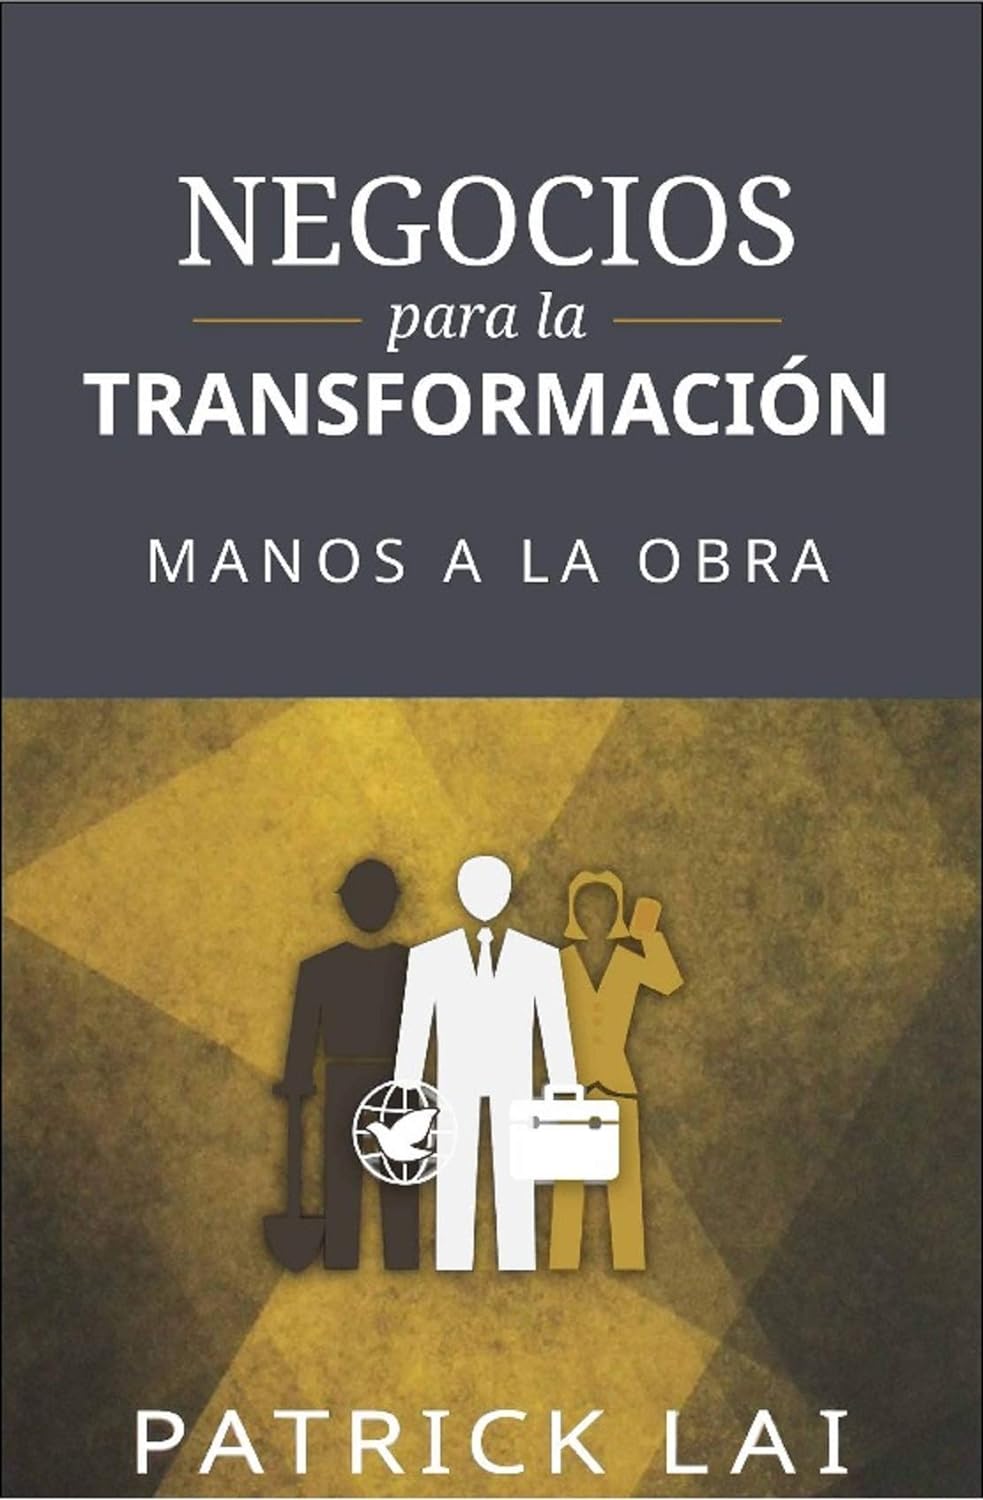 Resumo do livro NEGOCIOS para la TRANSFORMACION: MANOS A LA OBRA